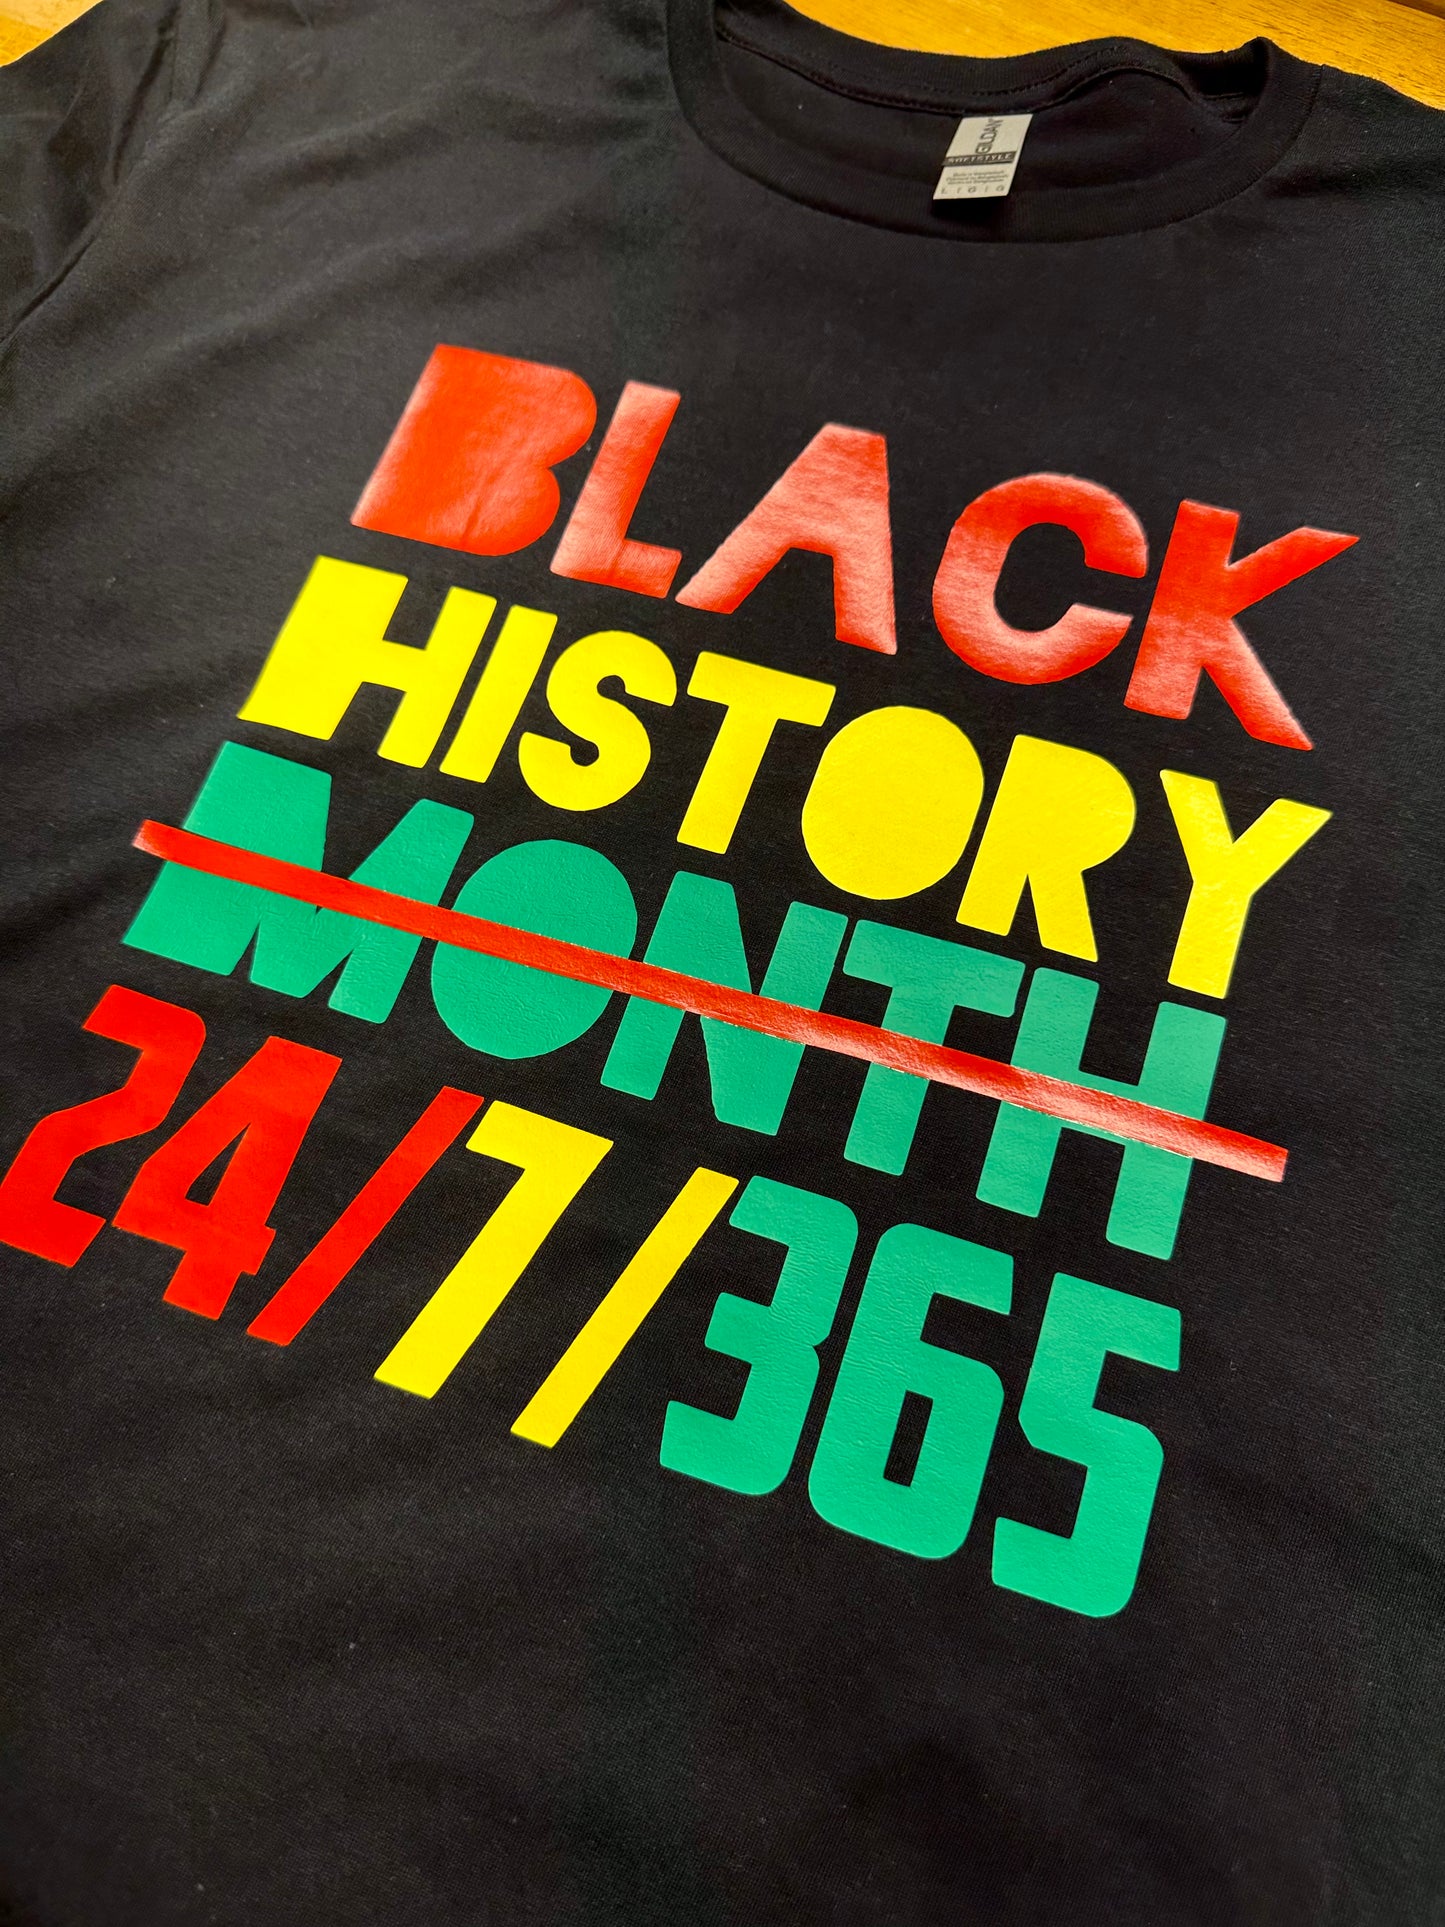 Black History 24/7/365 Tee